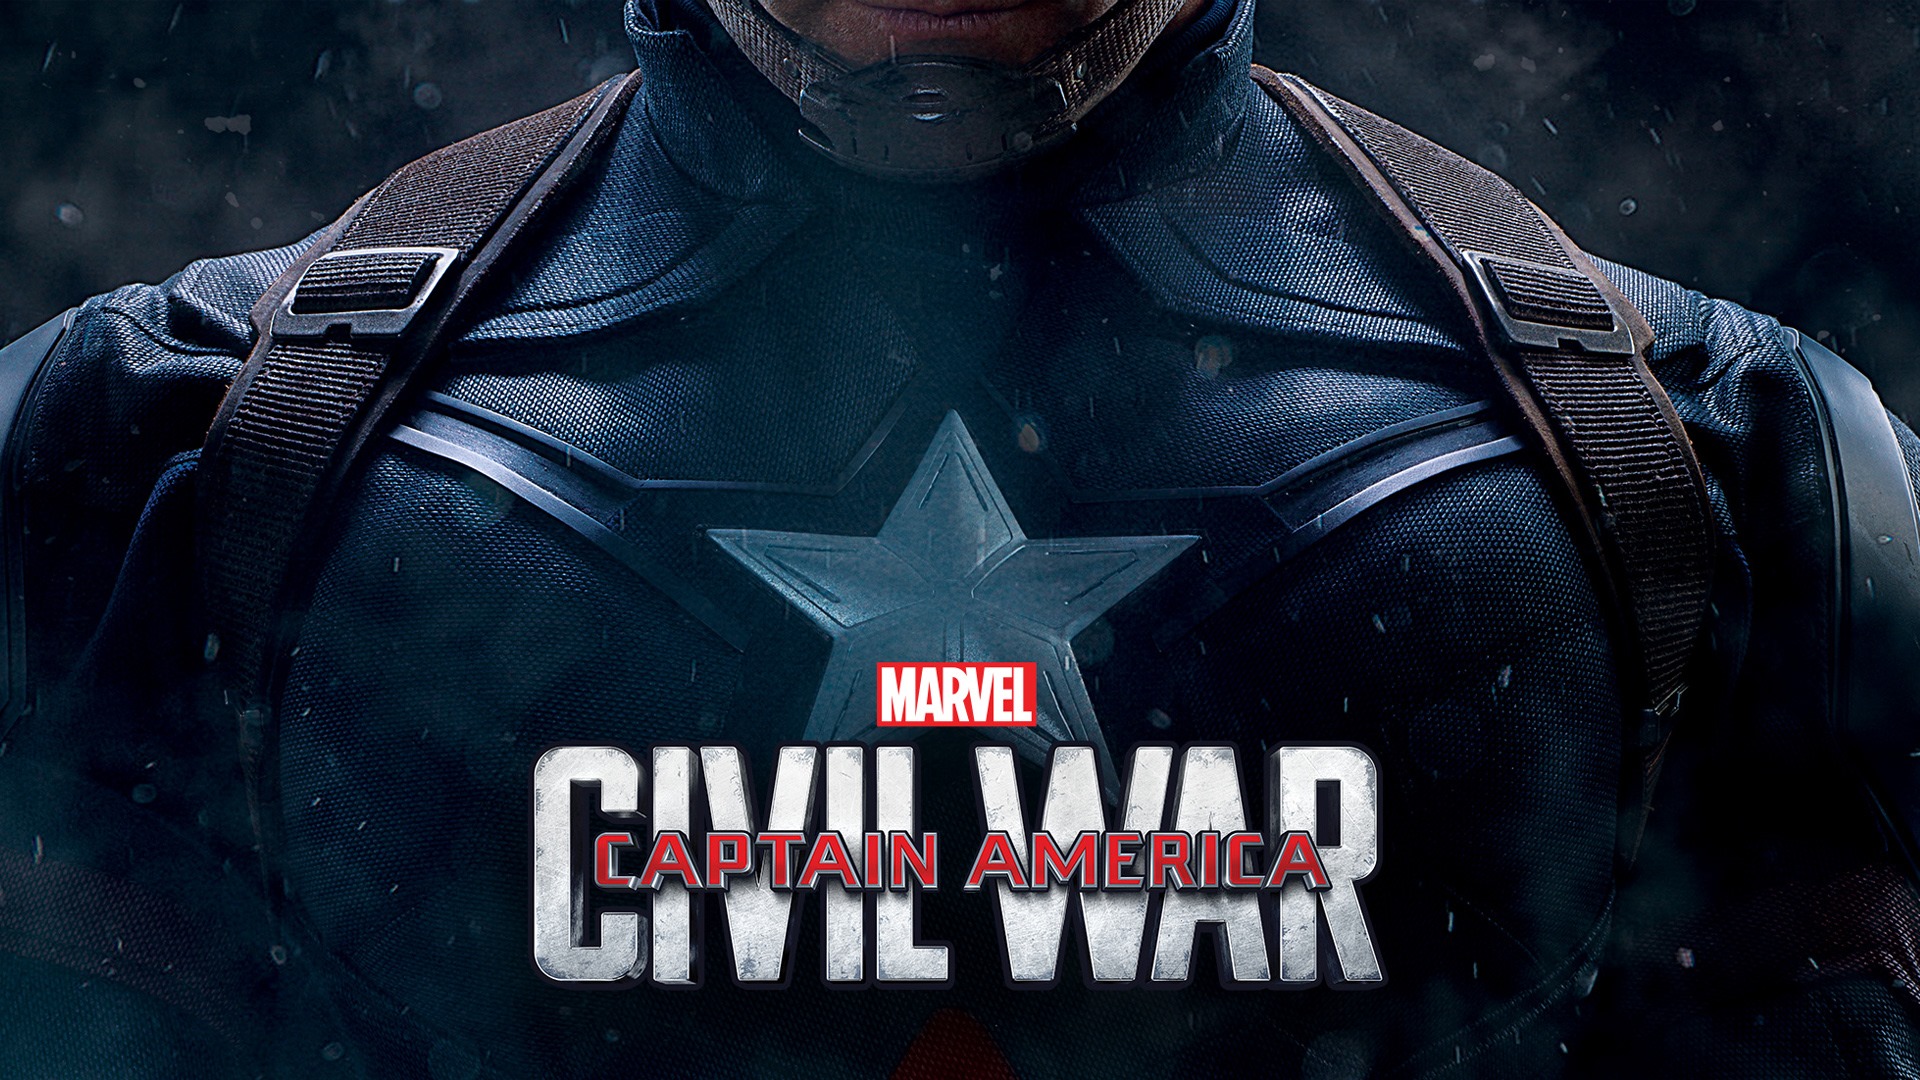 Capitán América: guerra civil, fondos de pantalla de alta definición de películas #5 - 1920x1080